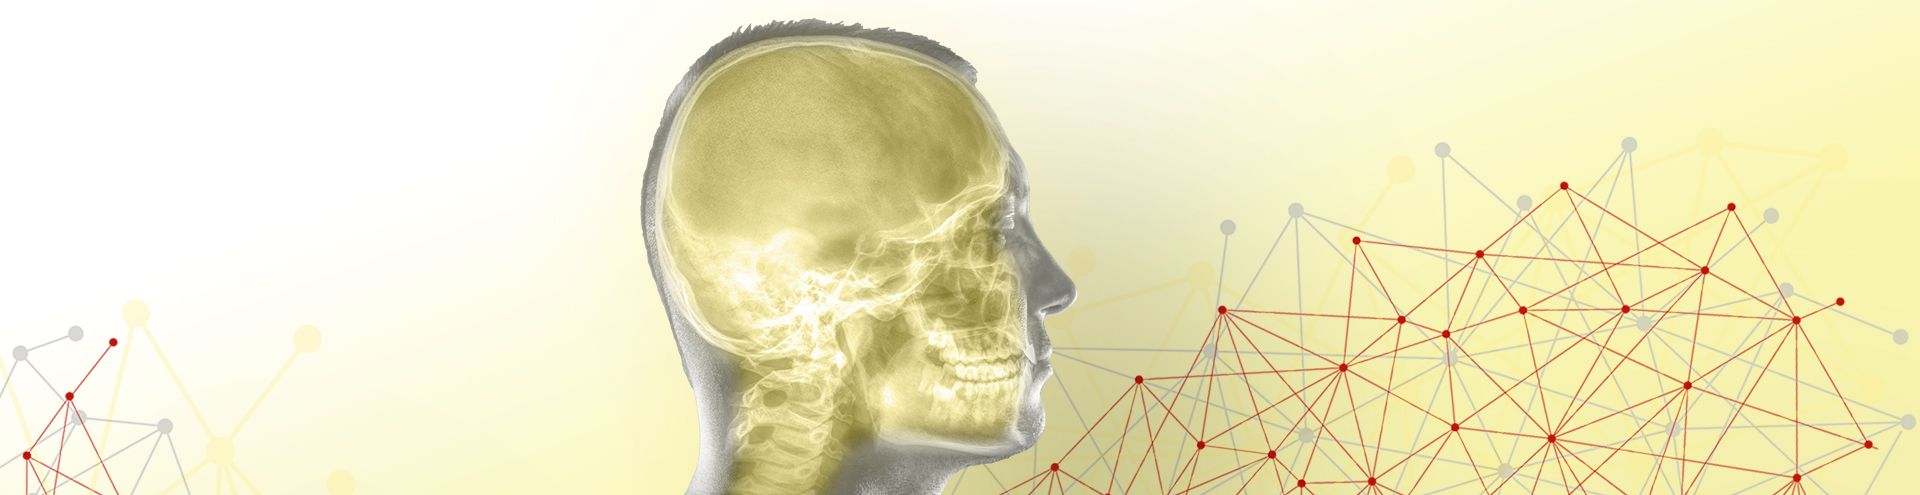 Section craniofacial